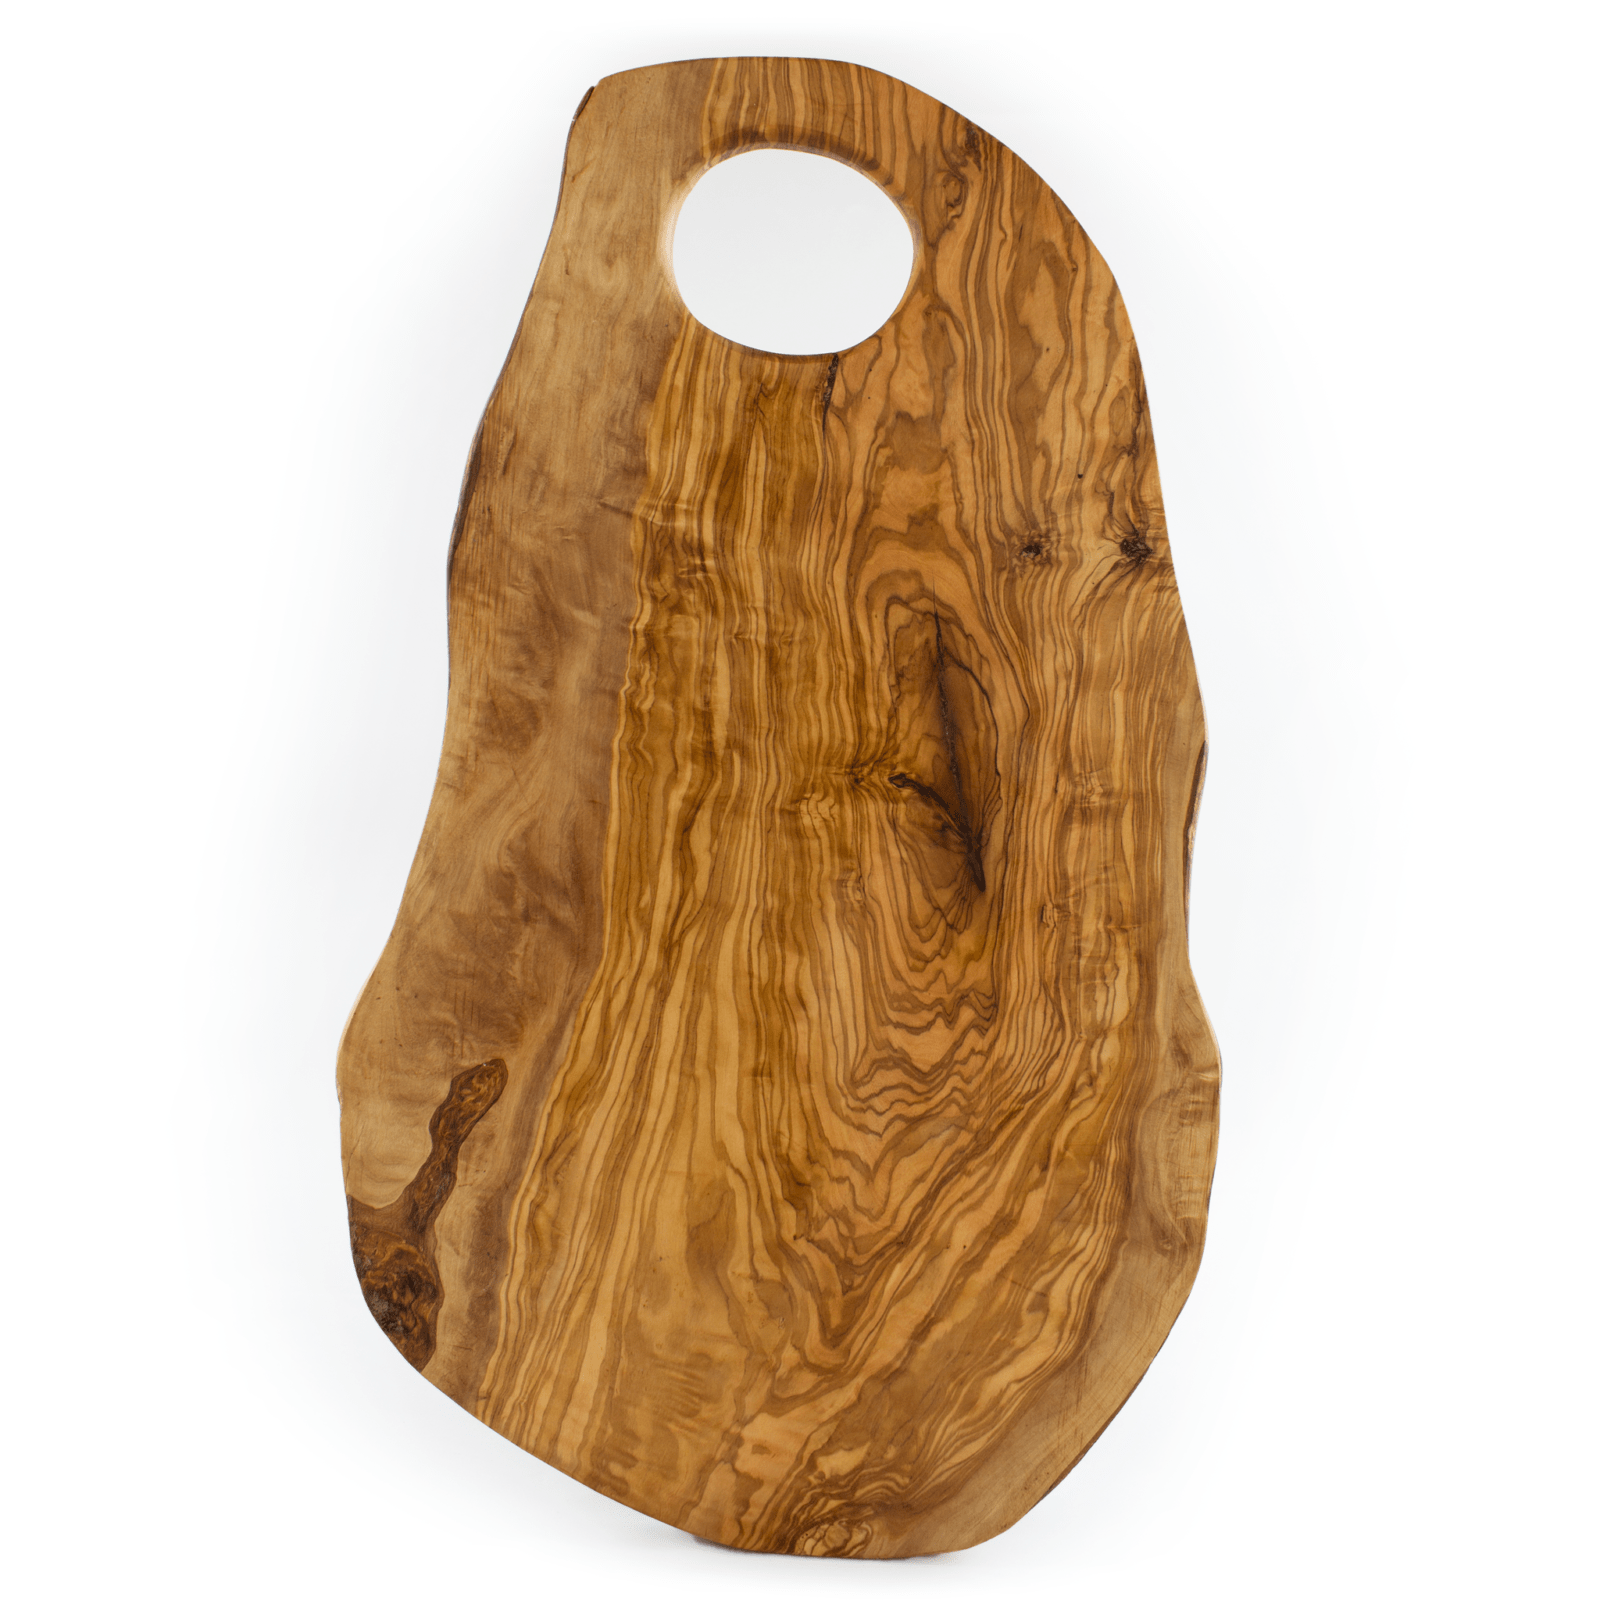 Set 4 pezzi tagliere per aperitivo in legno di Ulivo - Arte Legno